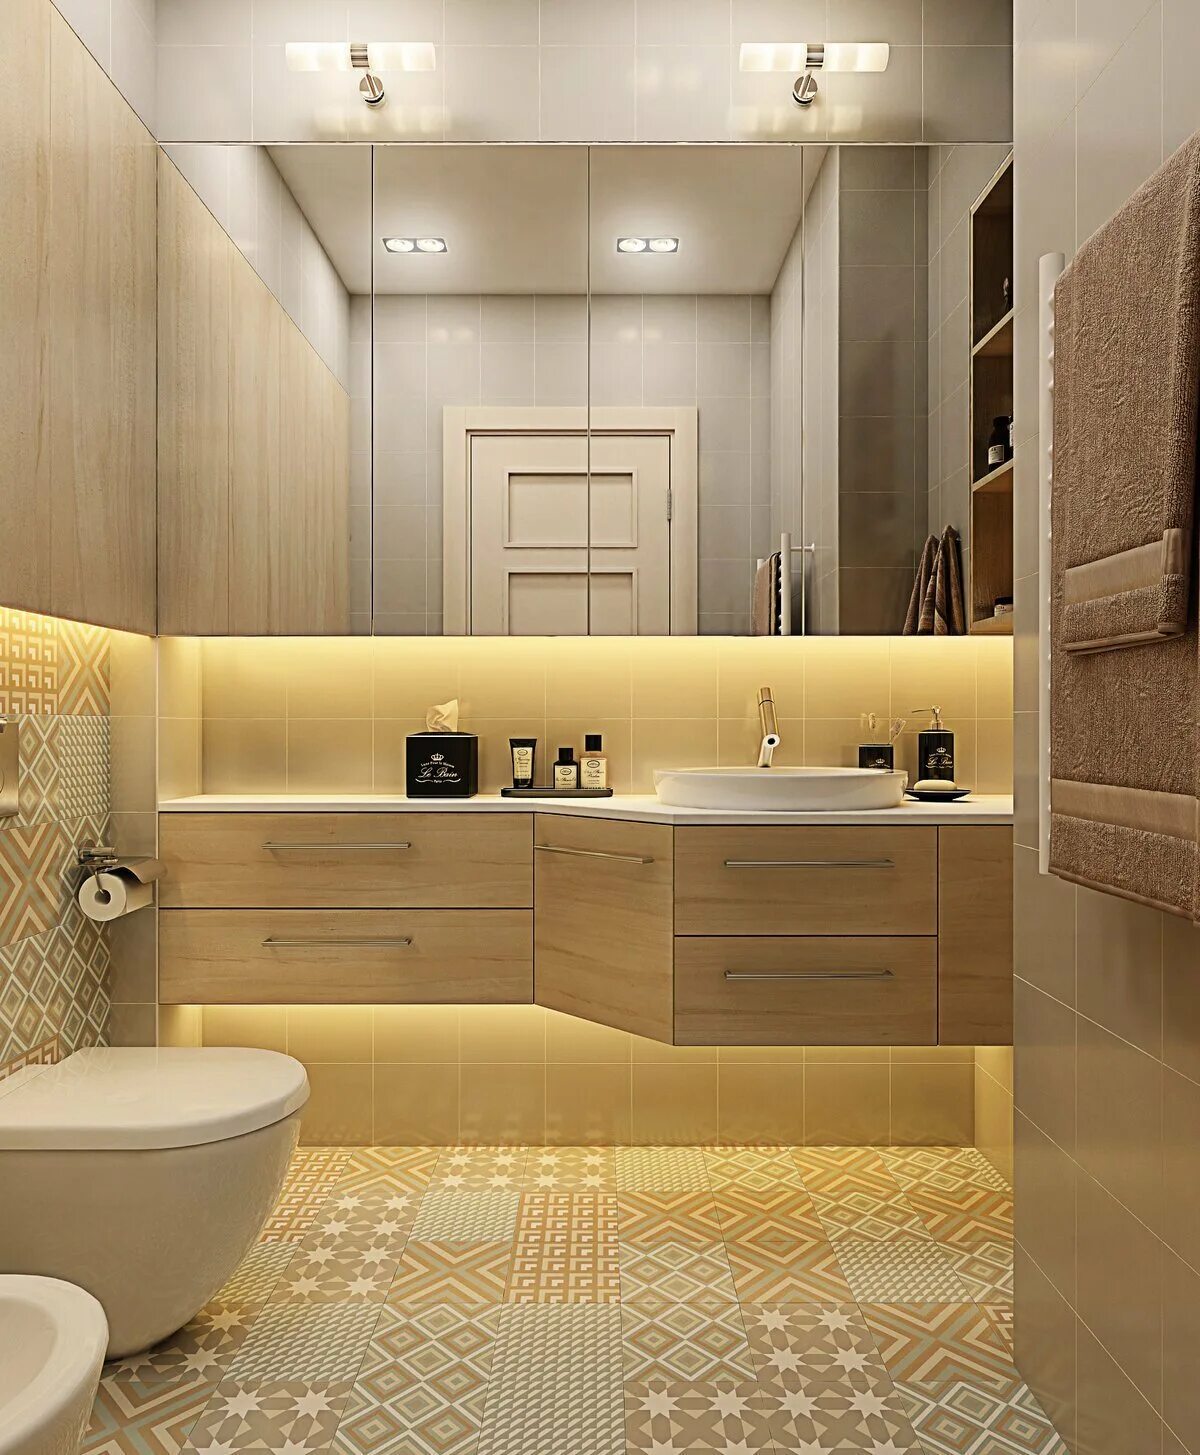 Интерьер совмещенного санузла. Проект ванной комнаты. Ванная дизайн интерьера. Современный санузел плитка.